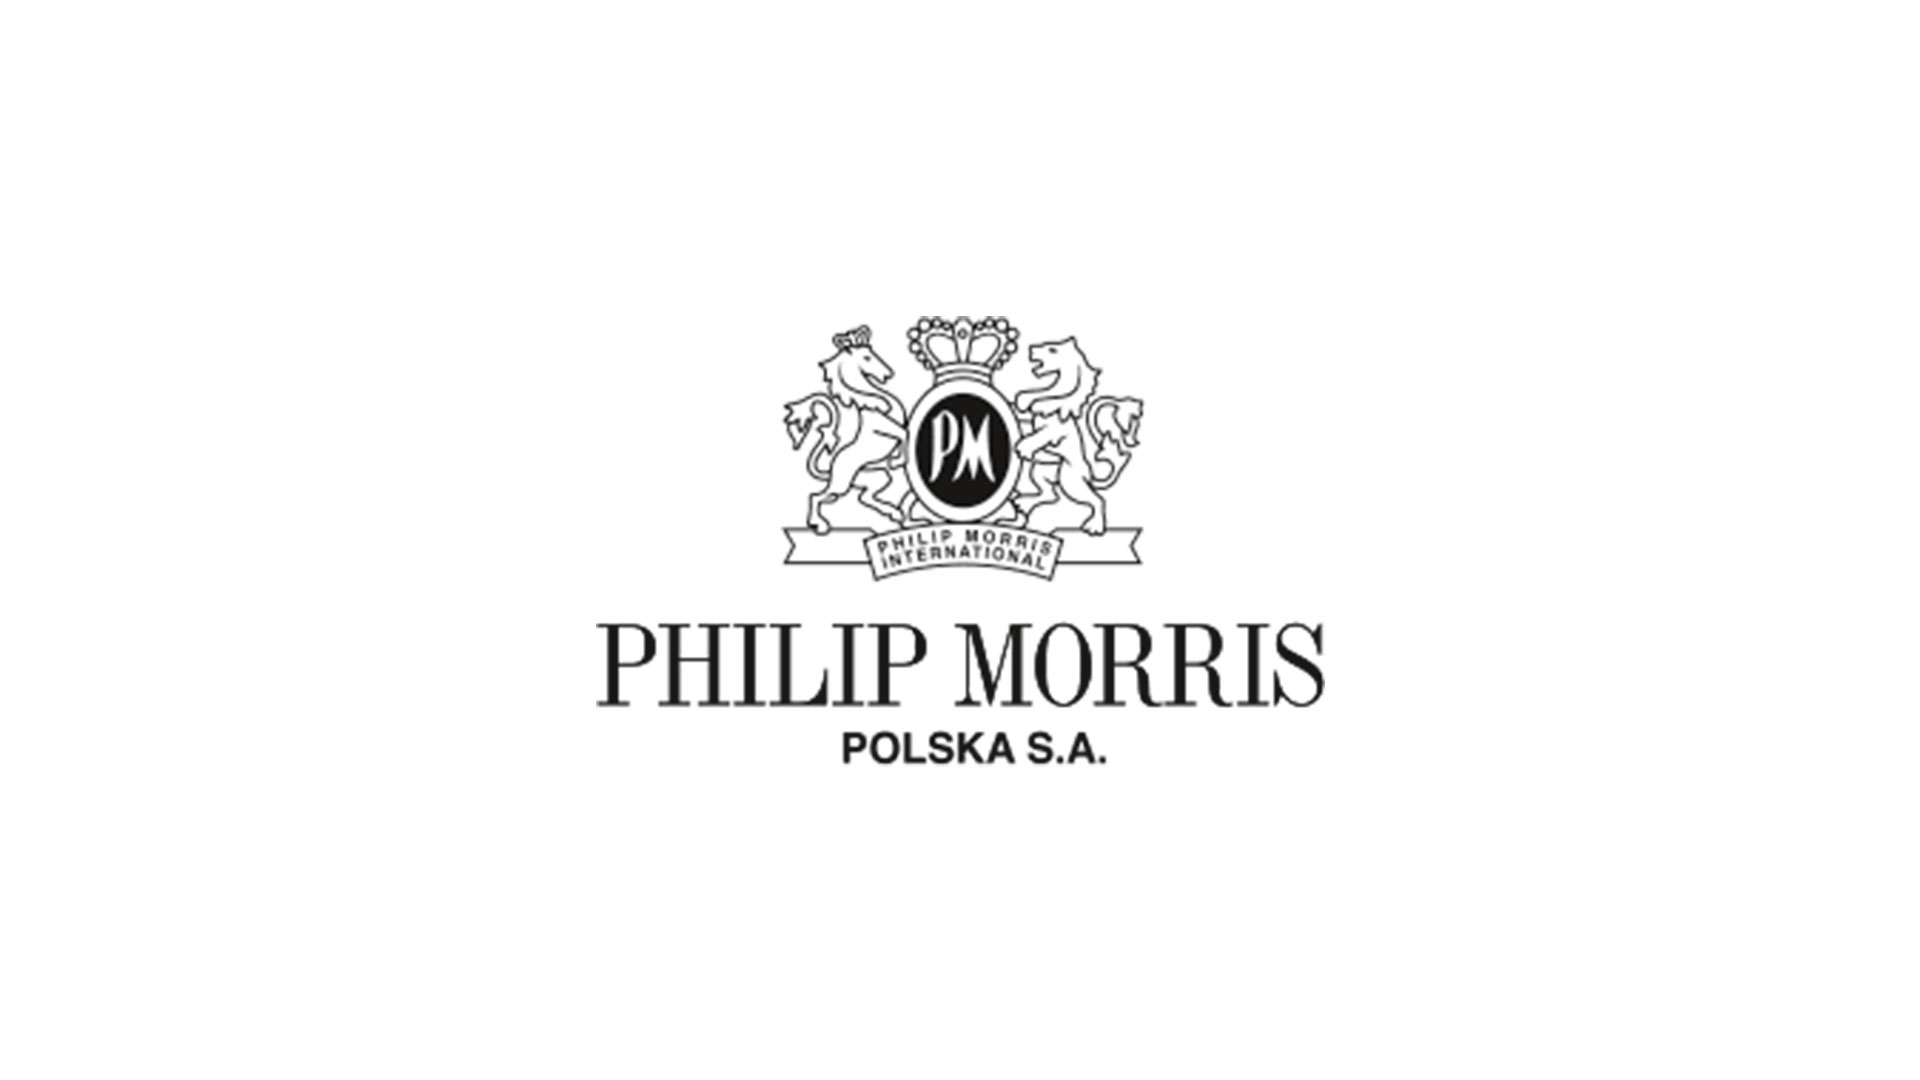 Philip-Morris